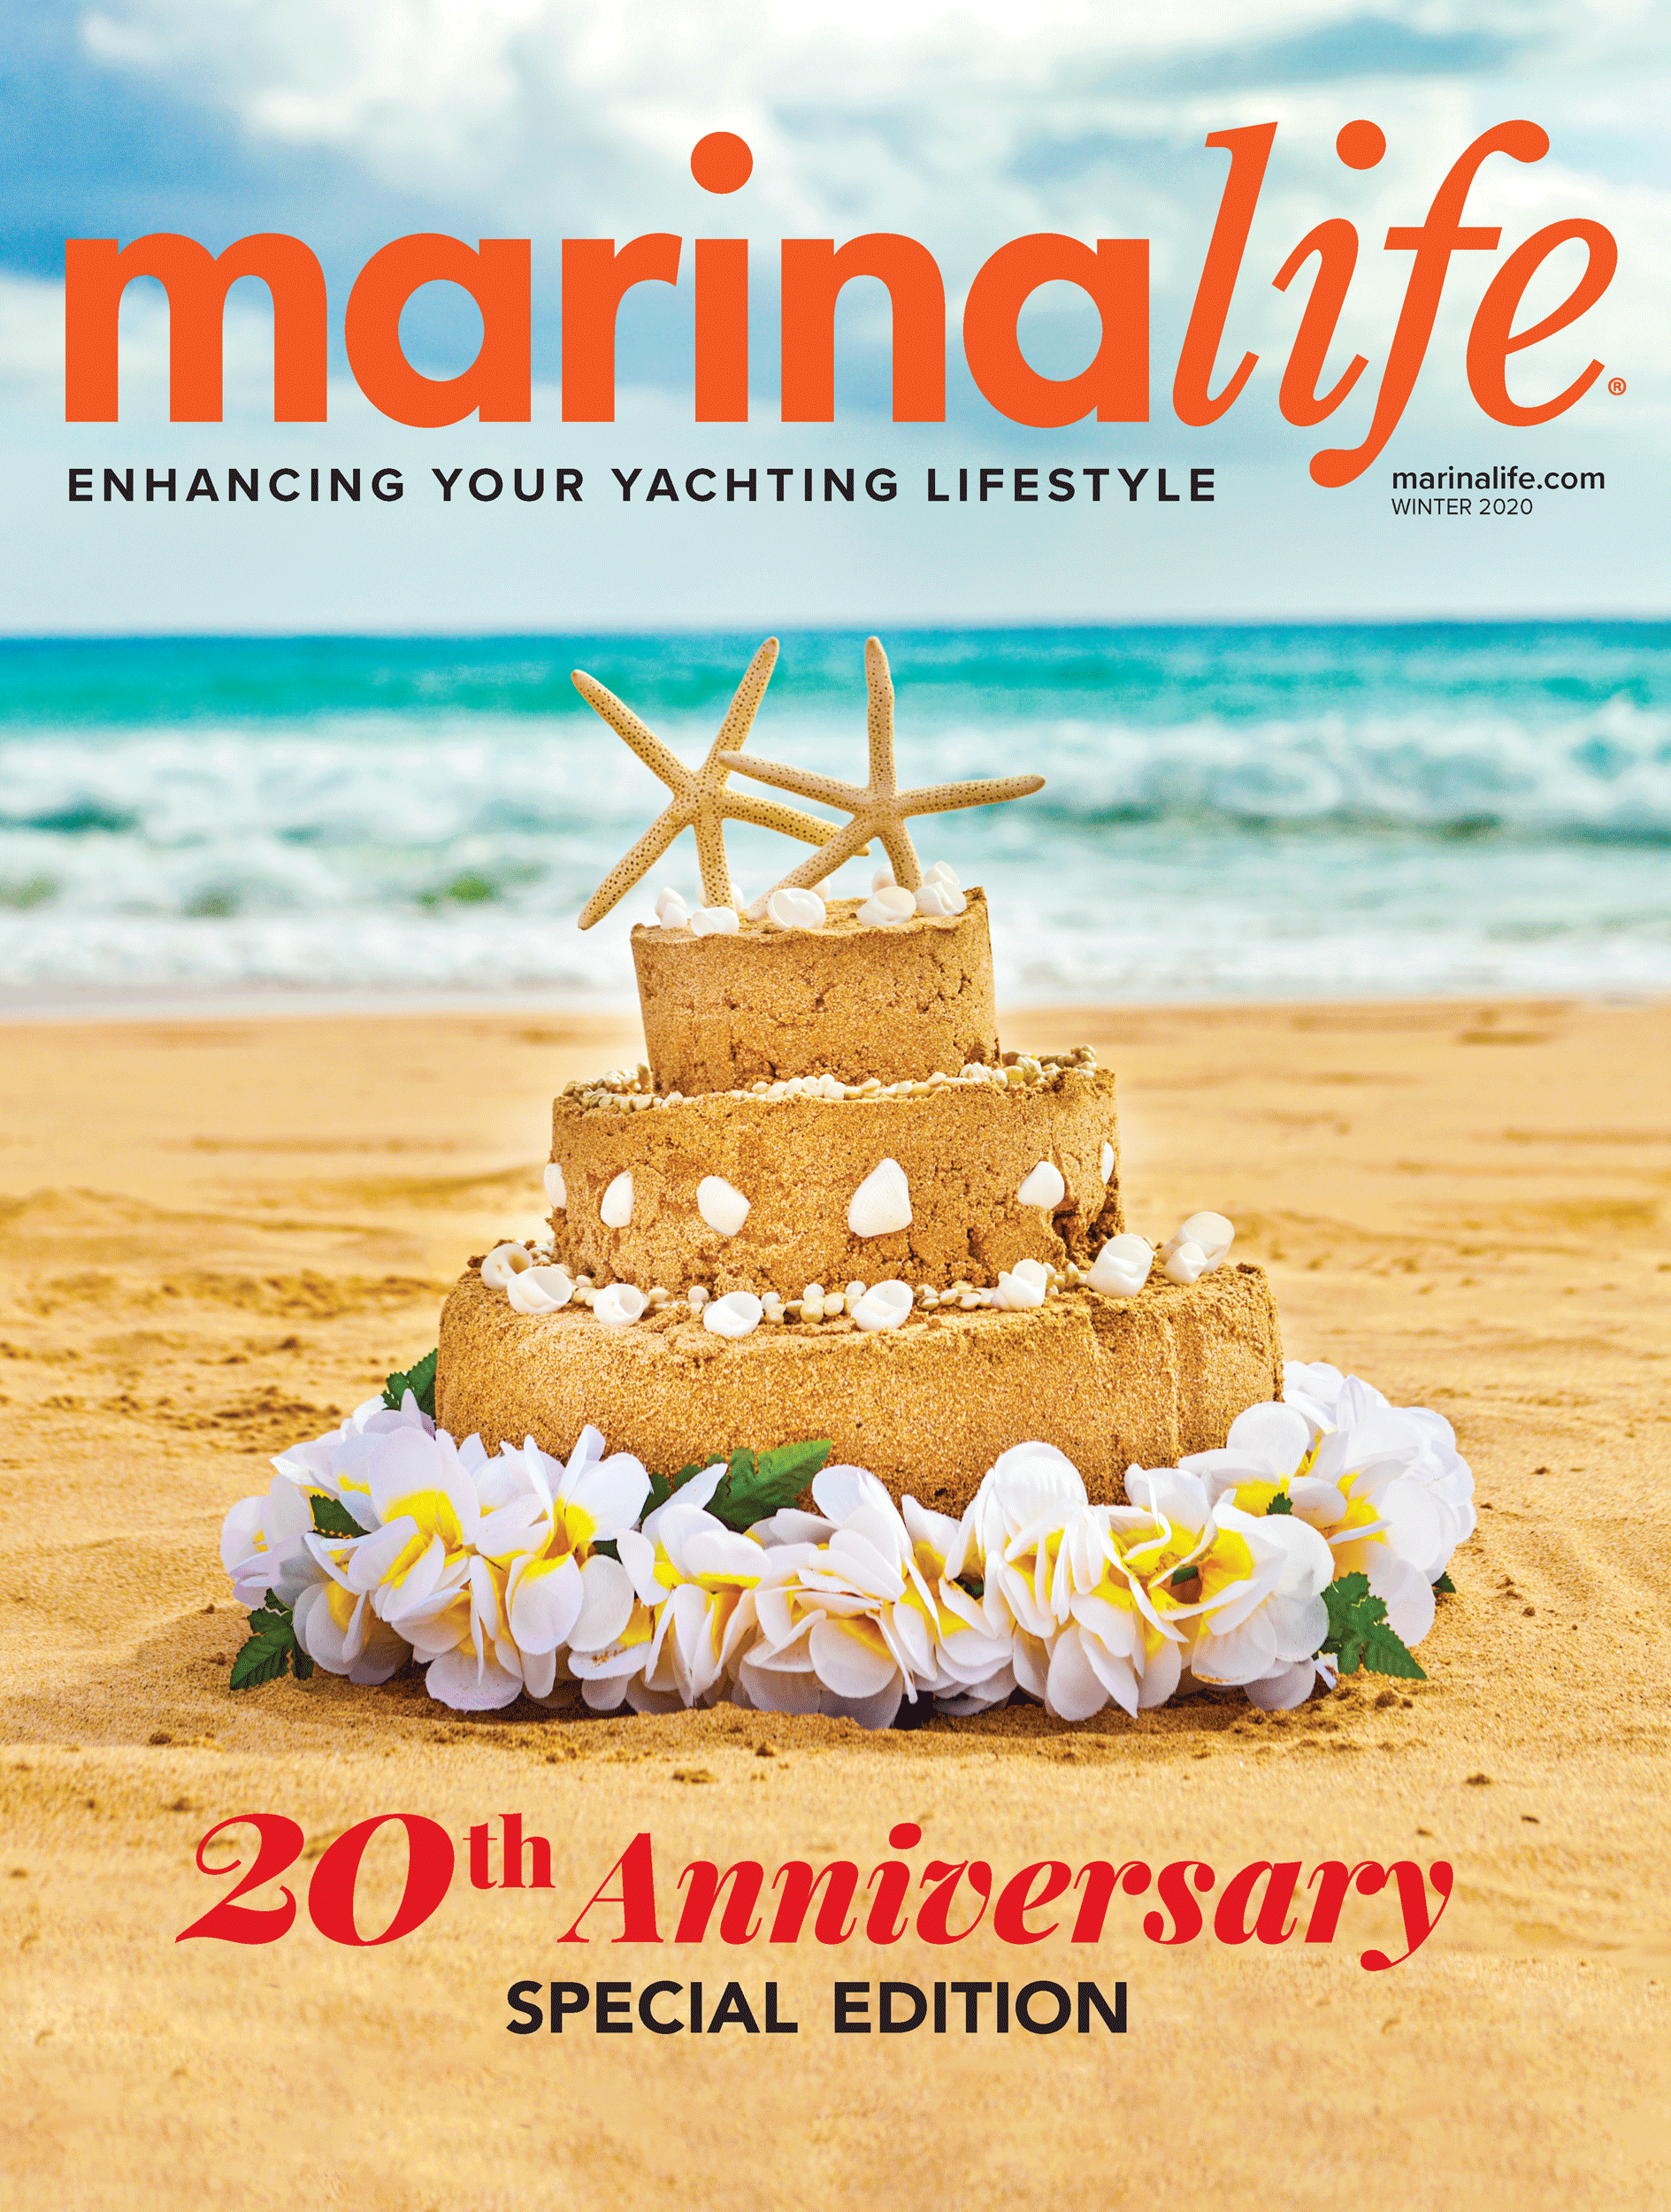 Marinalife Winter 2020 Magazine Issue - Marinalife 20th Anniversary Edition